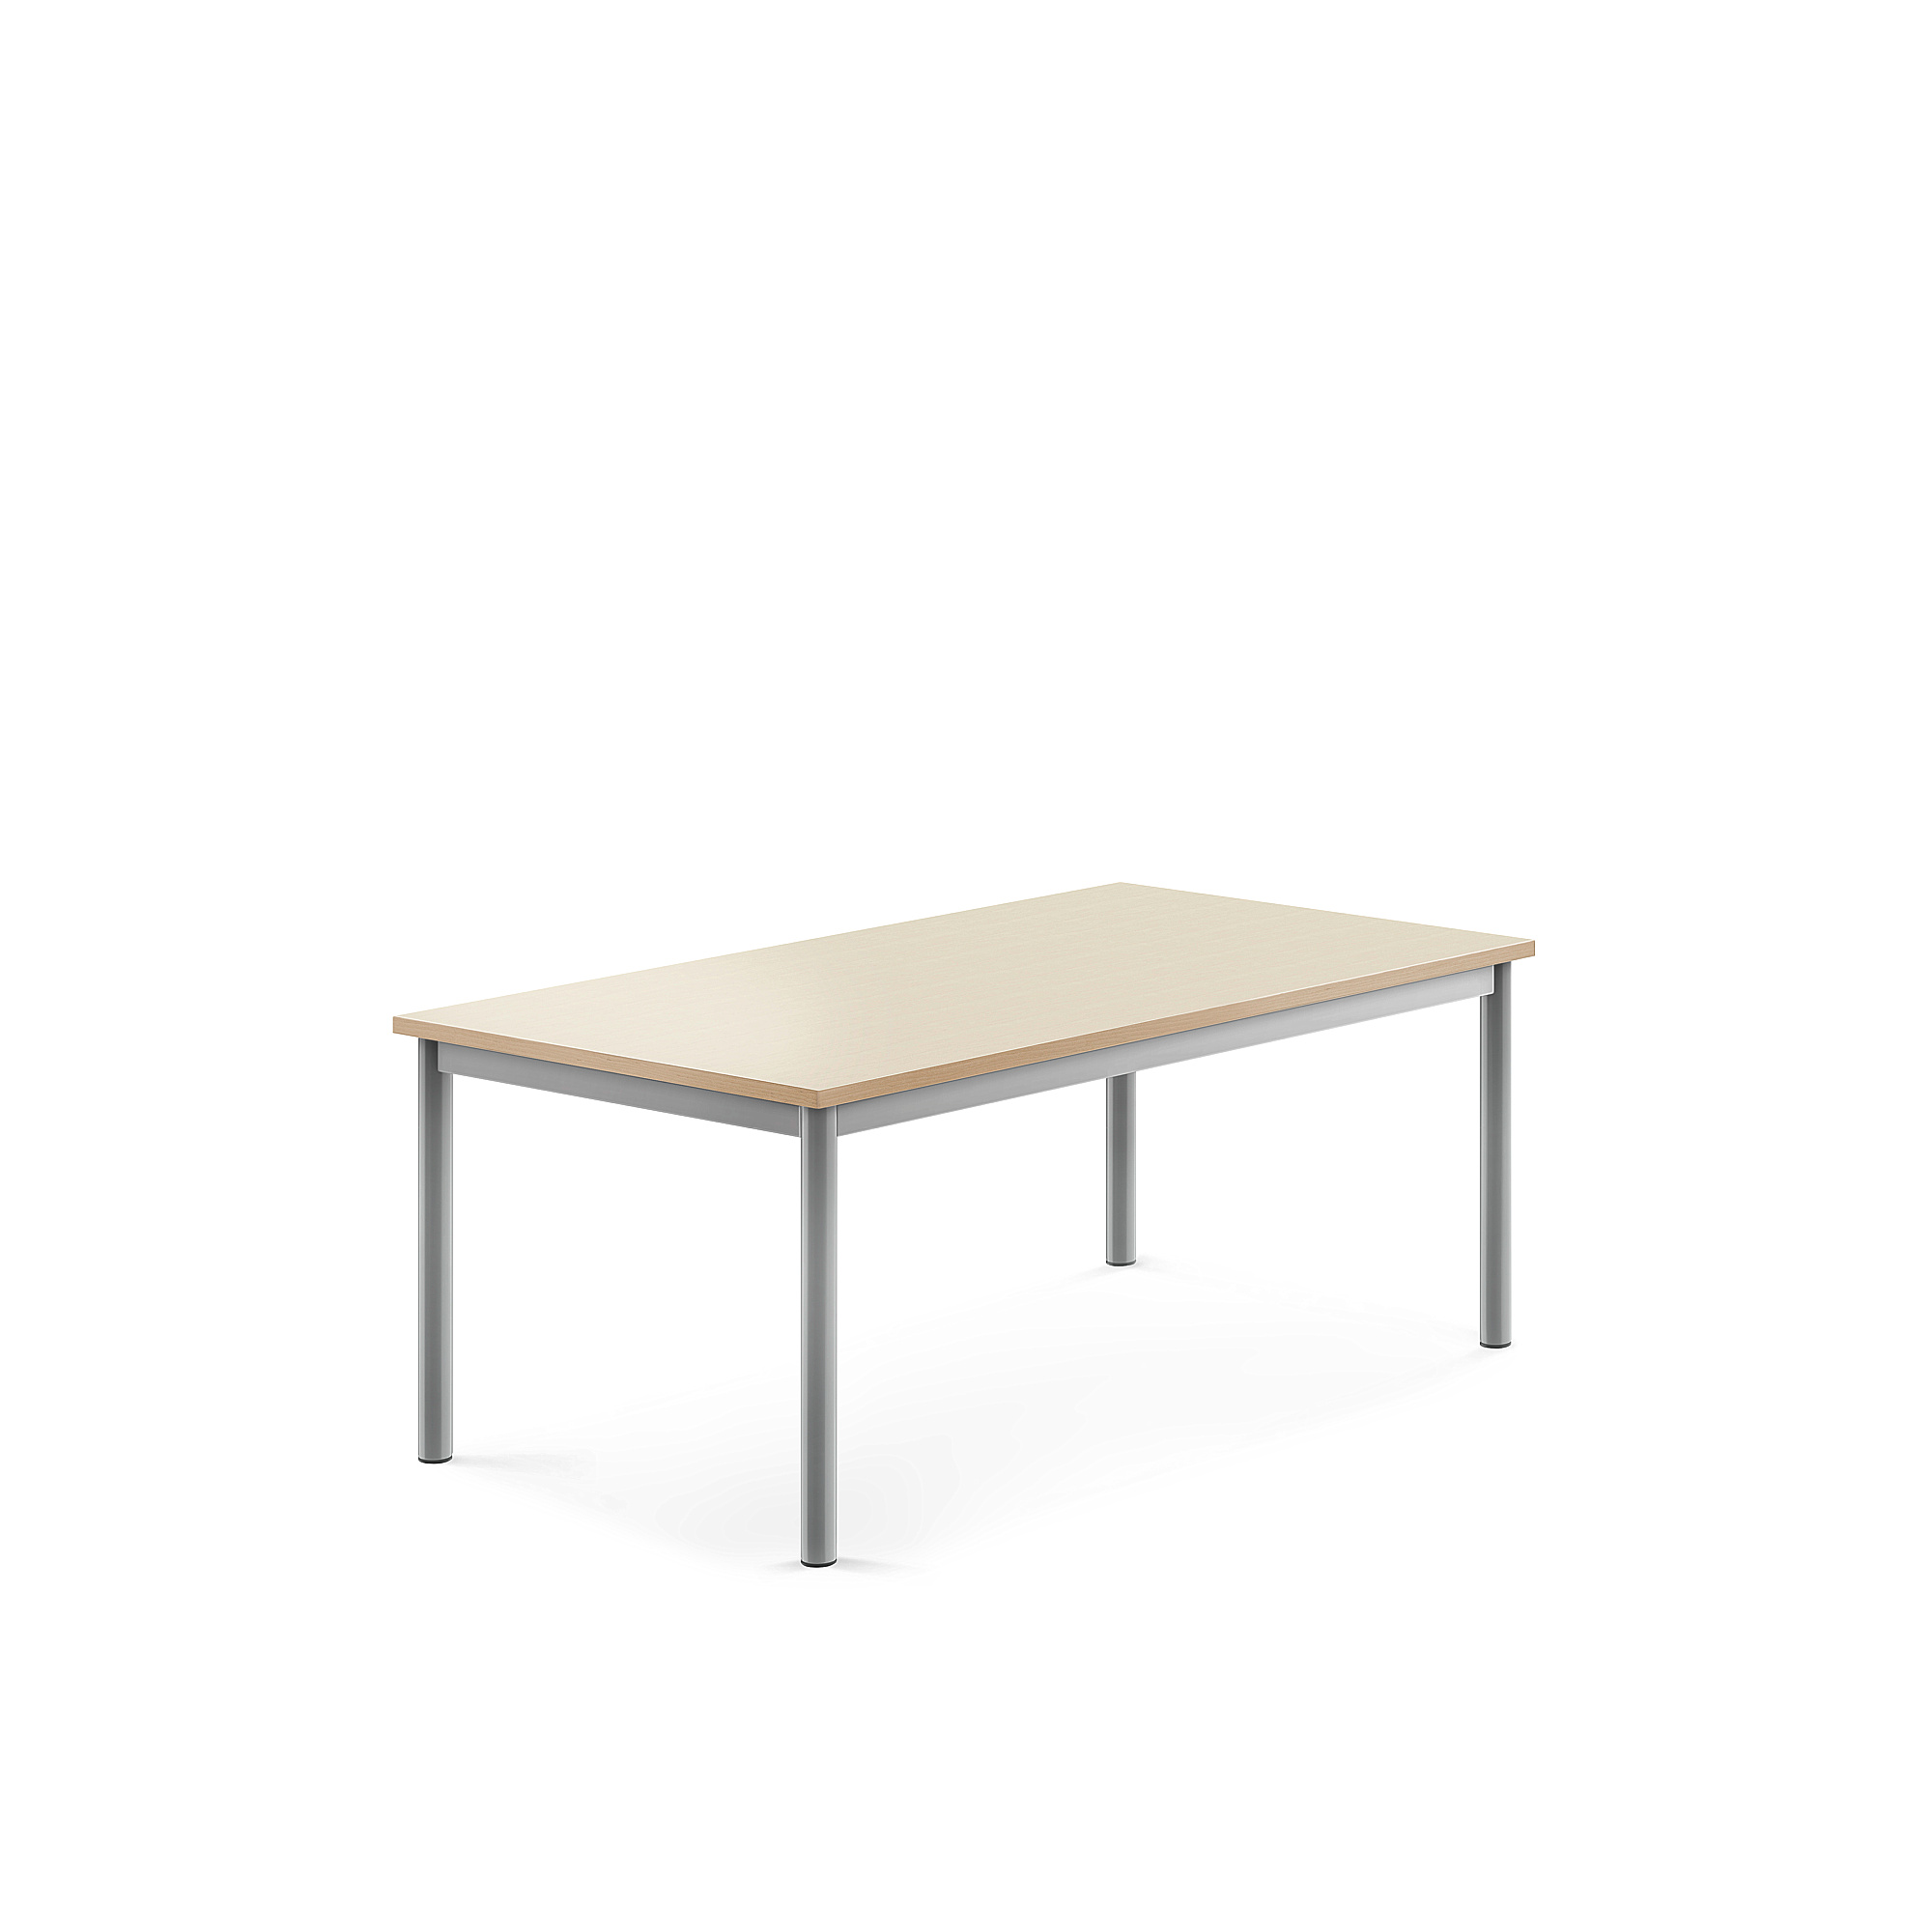 Stůl BORÅS, 1200x700x500 mm, stříbrné nohy, HPL deska, bříza